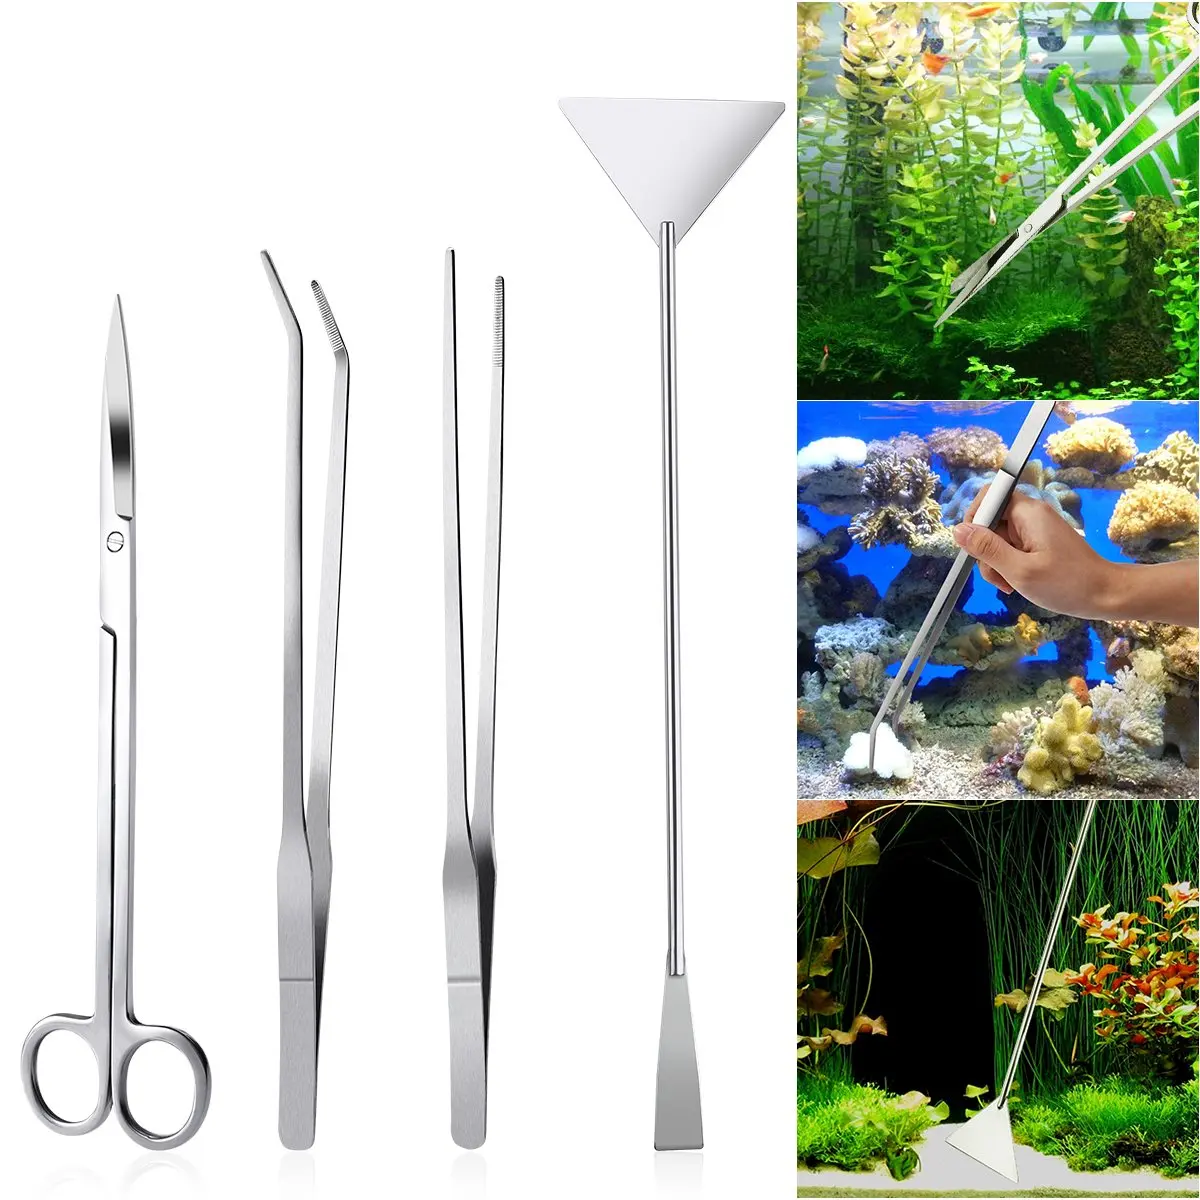 Набор инструментов для очистки аквариума из нержавеющей стали, очиститель аквариума, ножницы для пейзажа, пинцет, скребок для водорослей, для водорослей